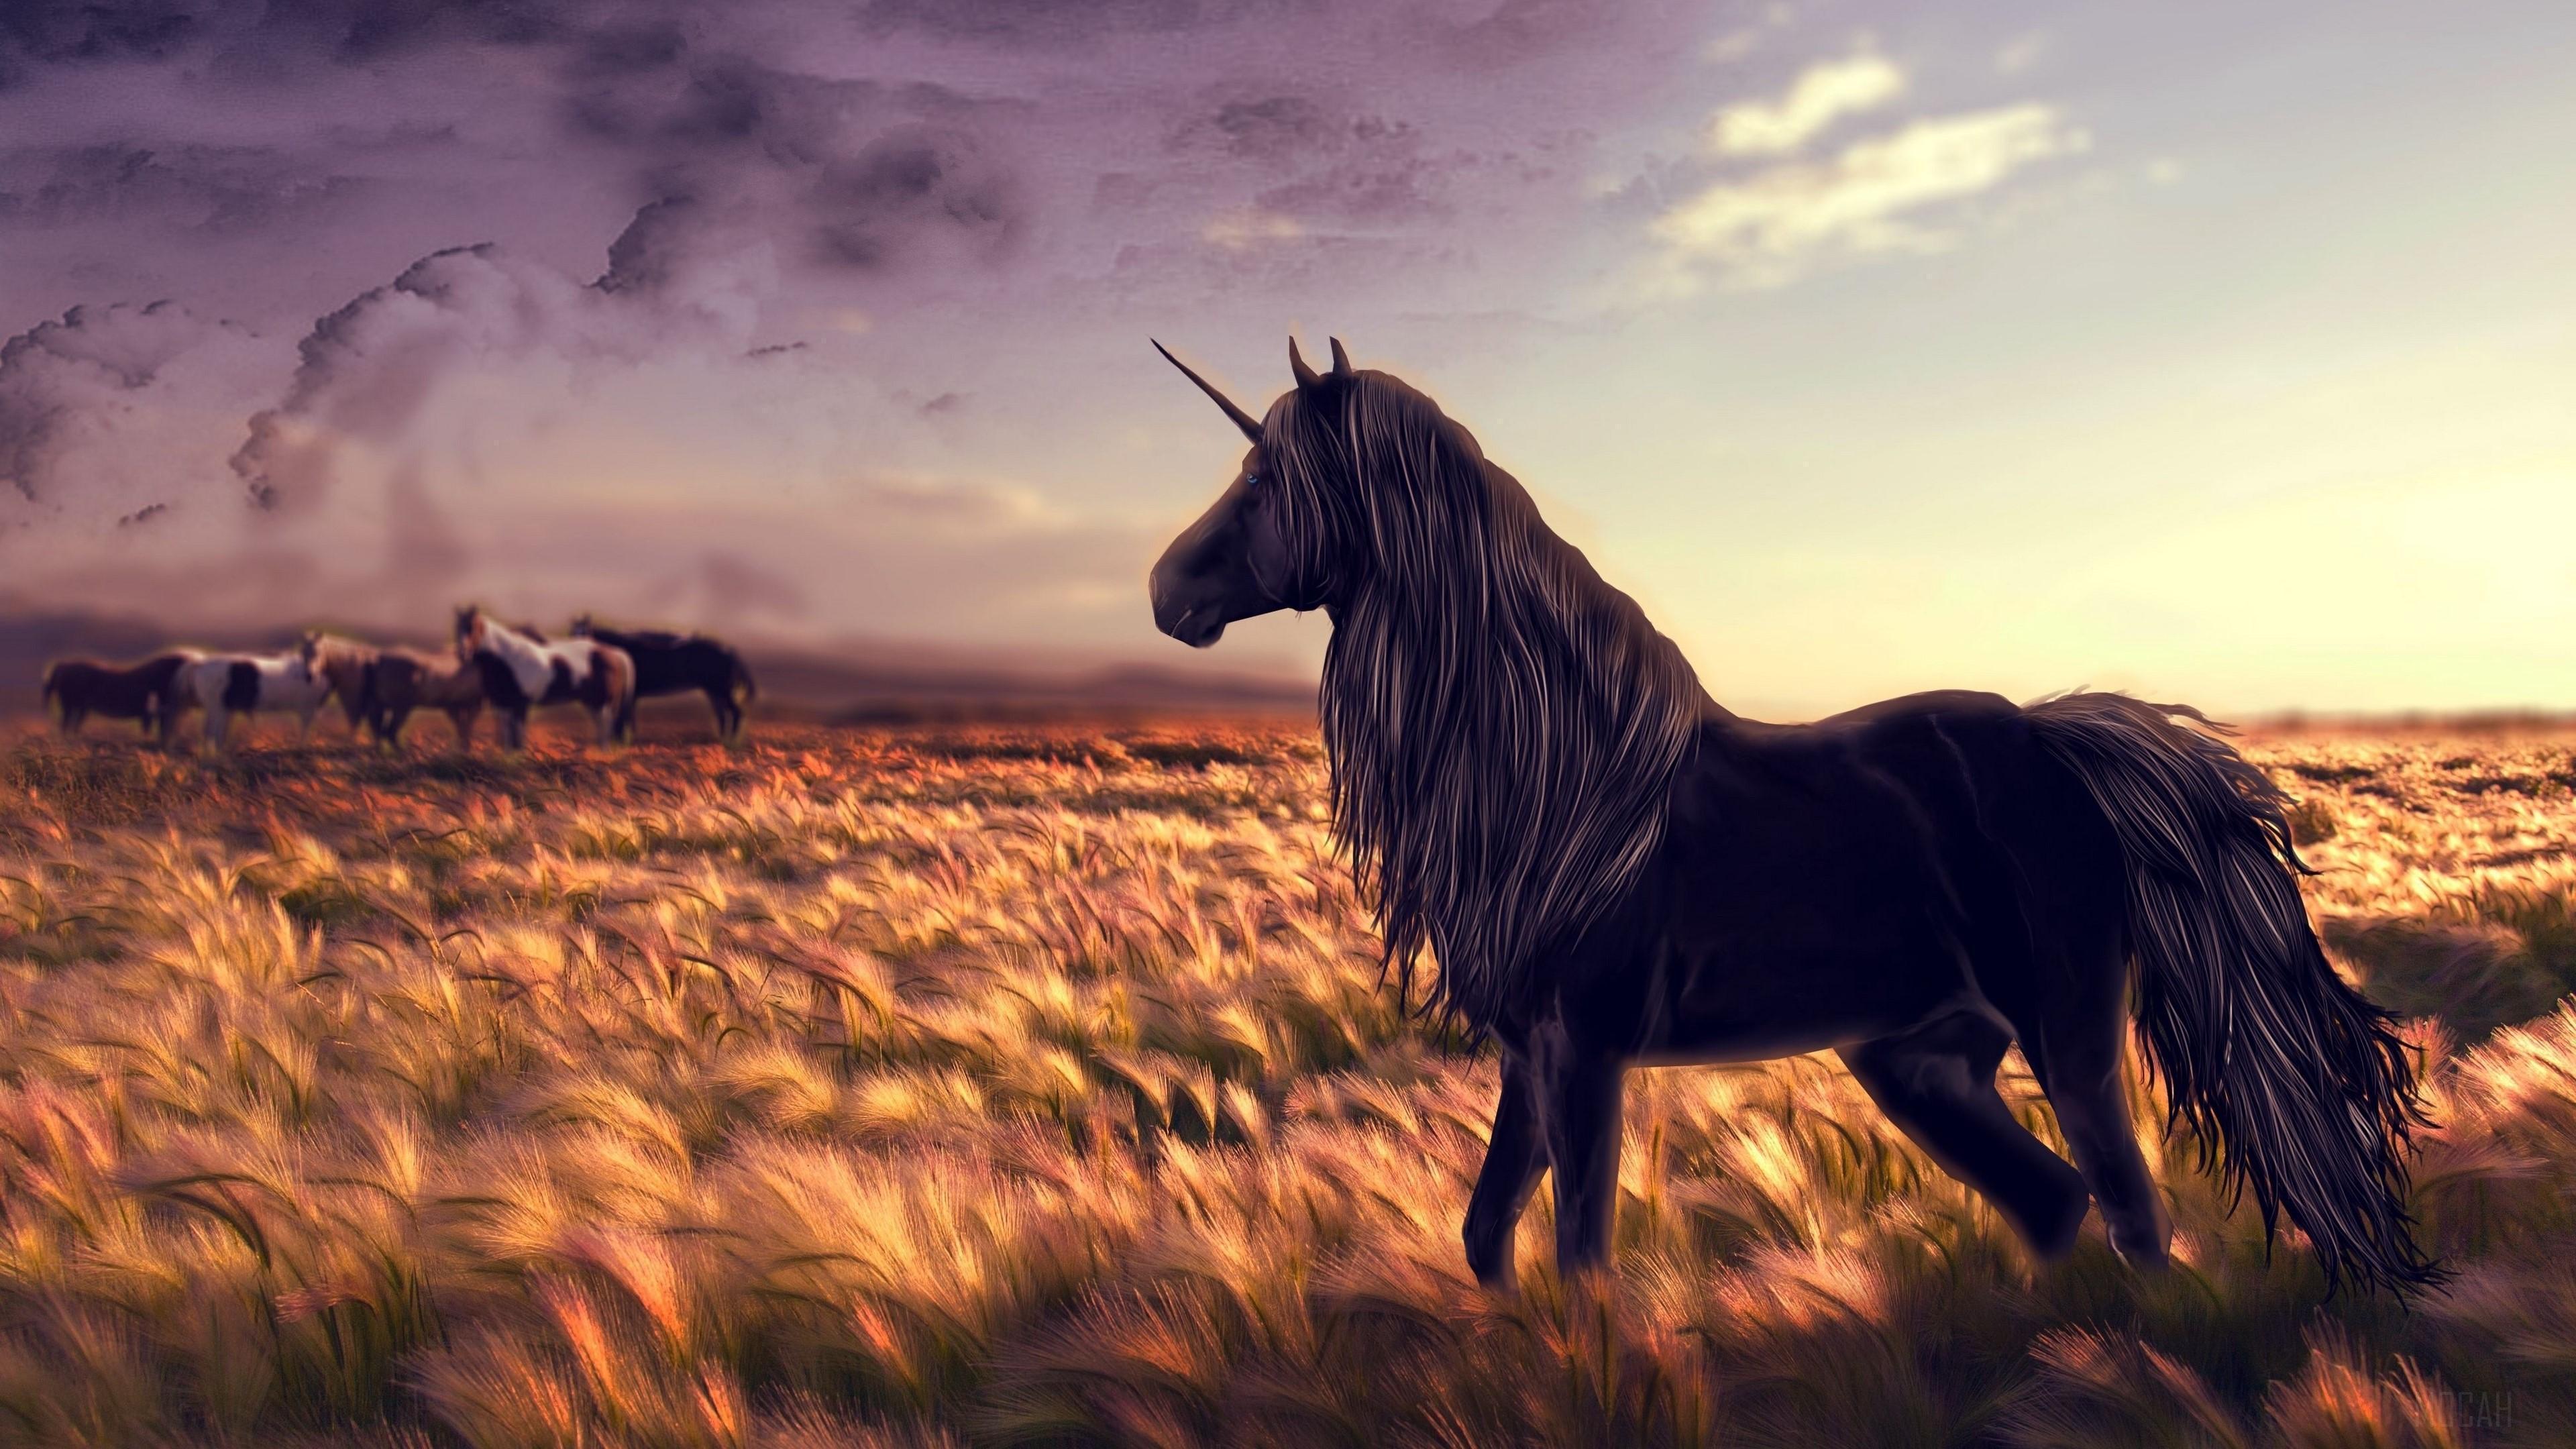 HD wallpaper, Horse, Art, Golf, Wind 4K, Grass, Unicorn